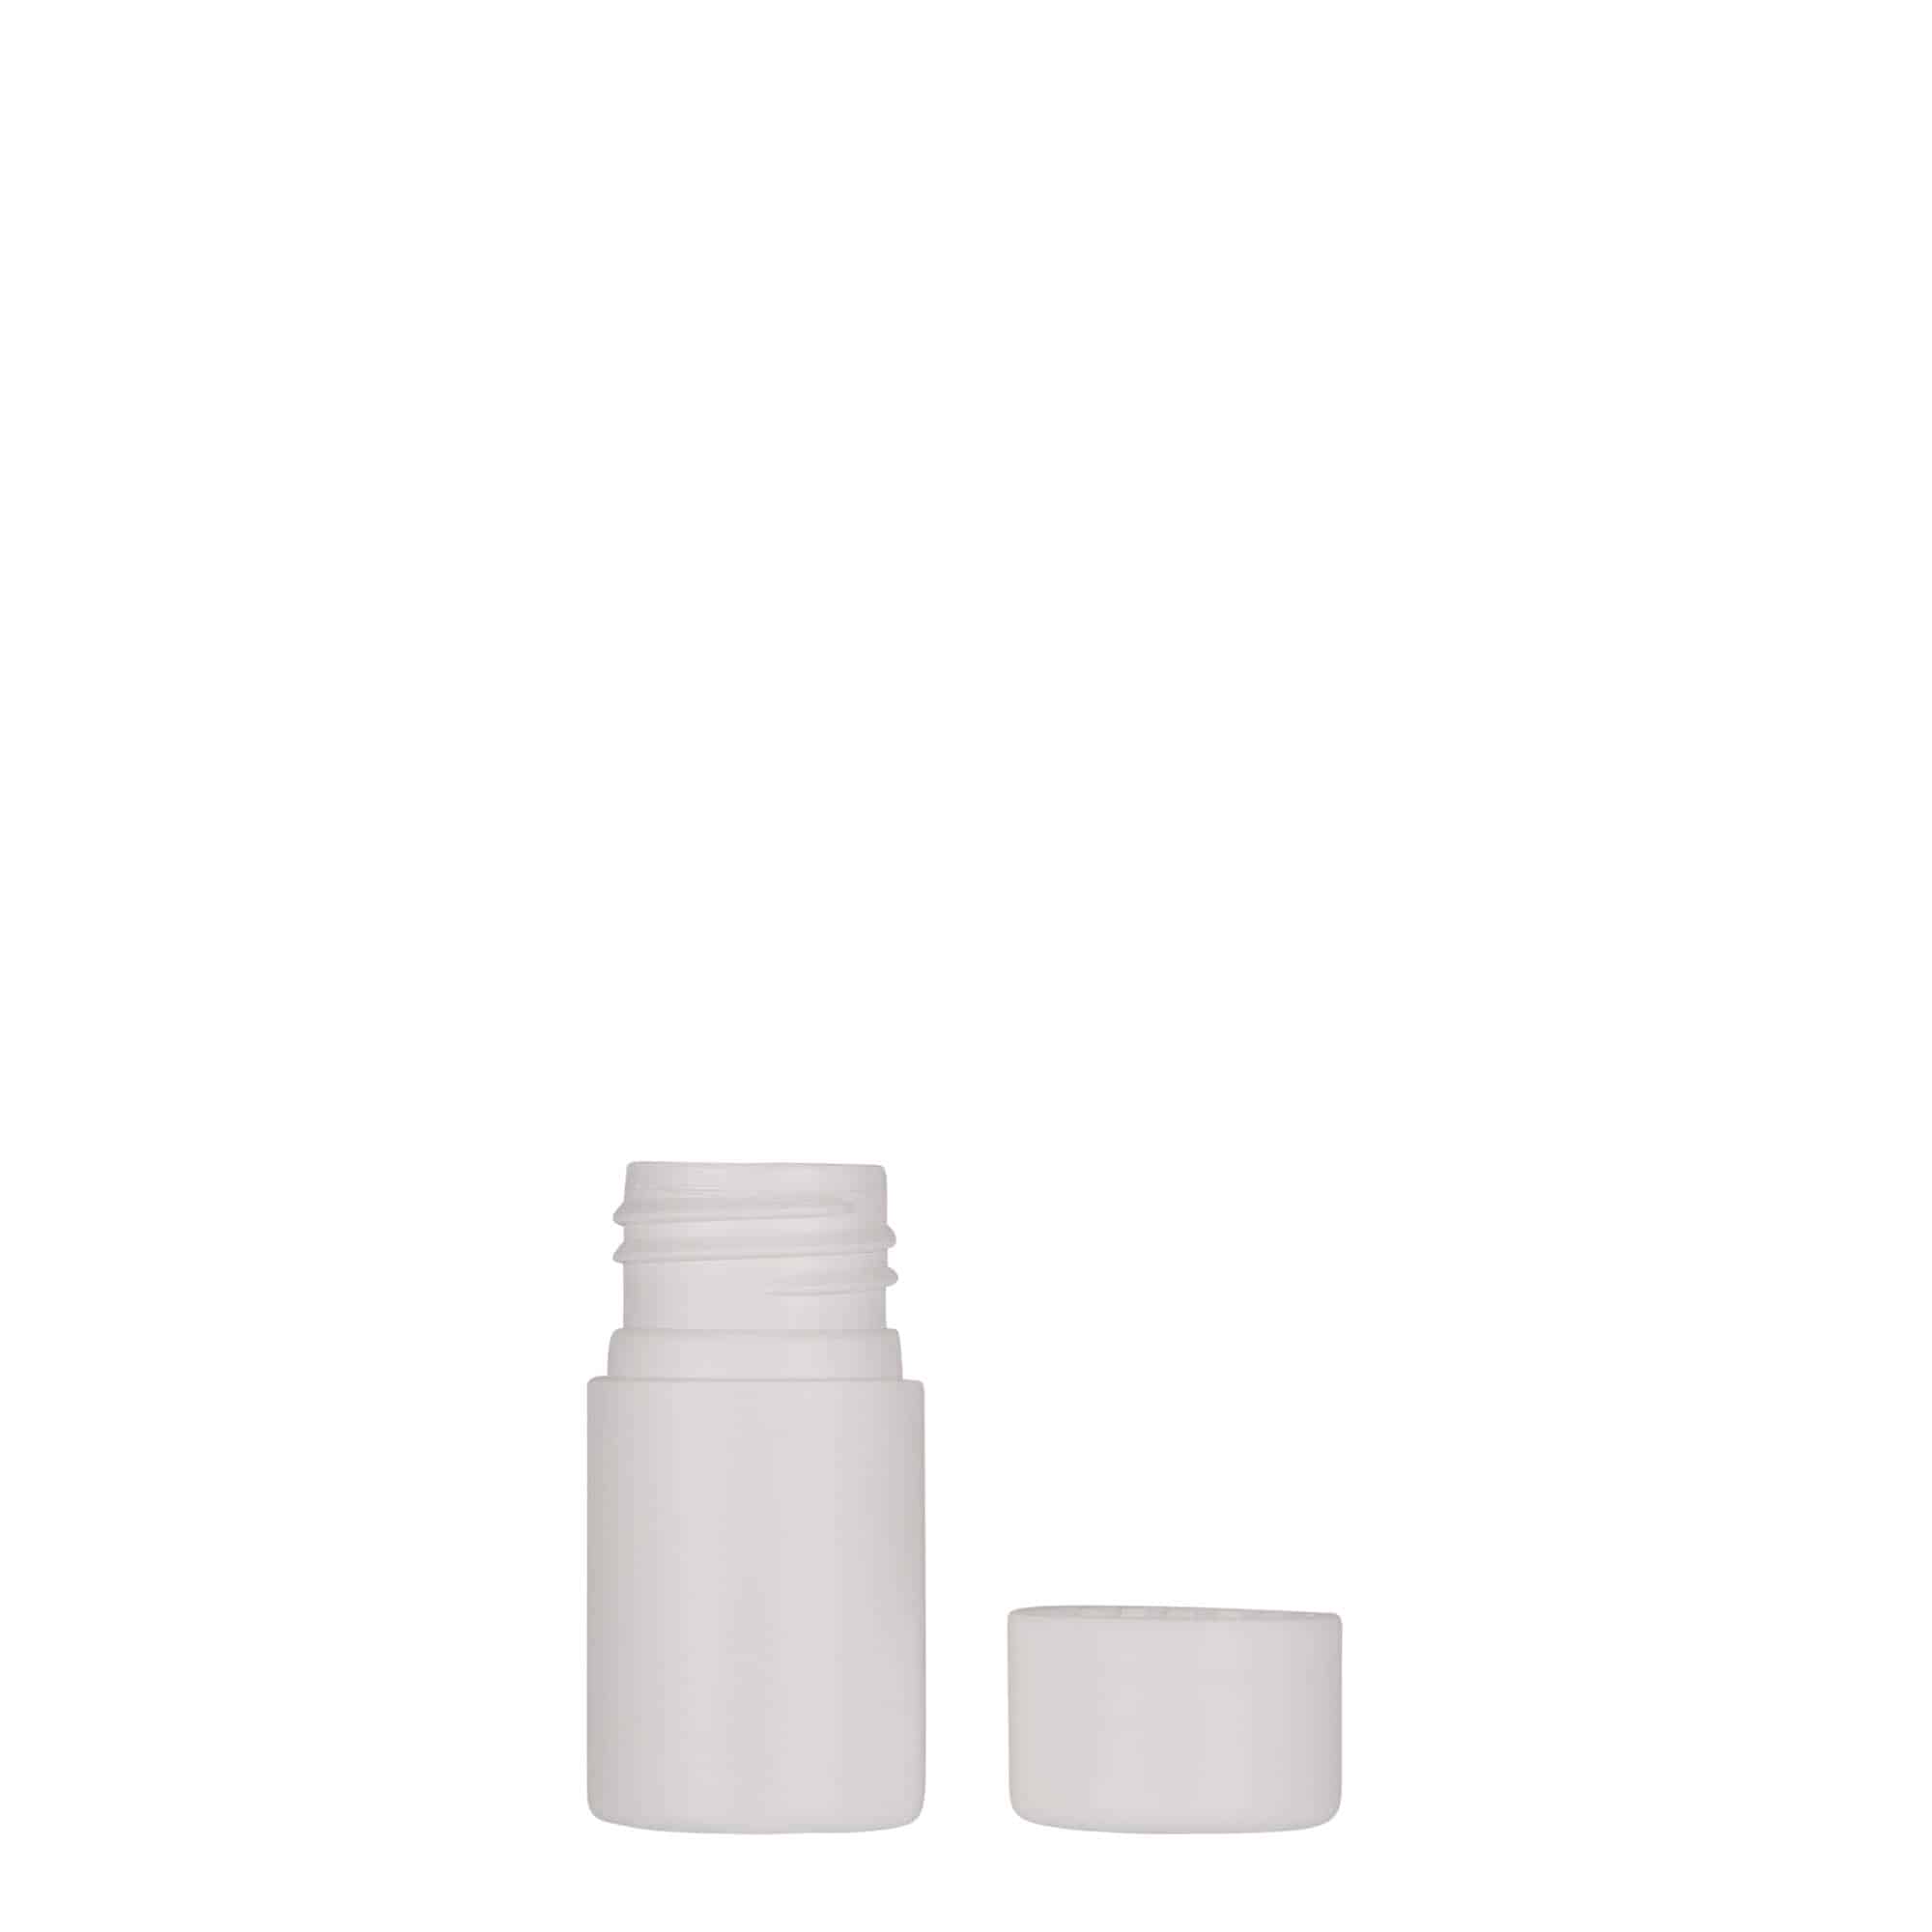 15 ml butelka z tworzywa sztucznego 'Tuffy', HDPE, kolor biały, zamknięcie: GPI 24/410